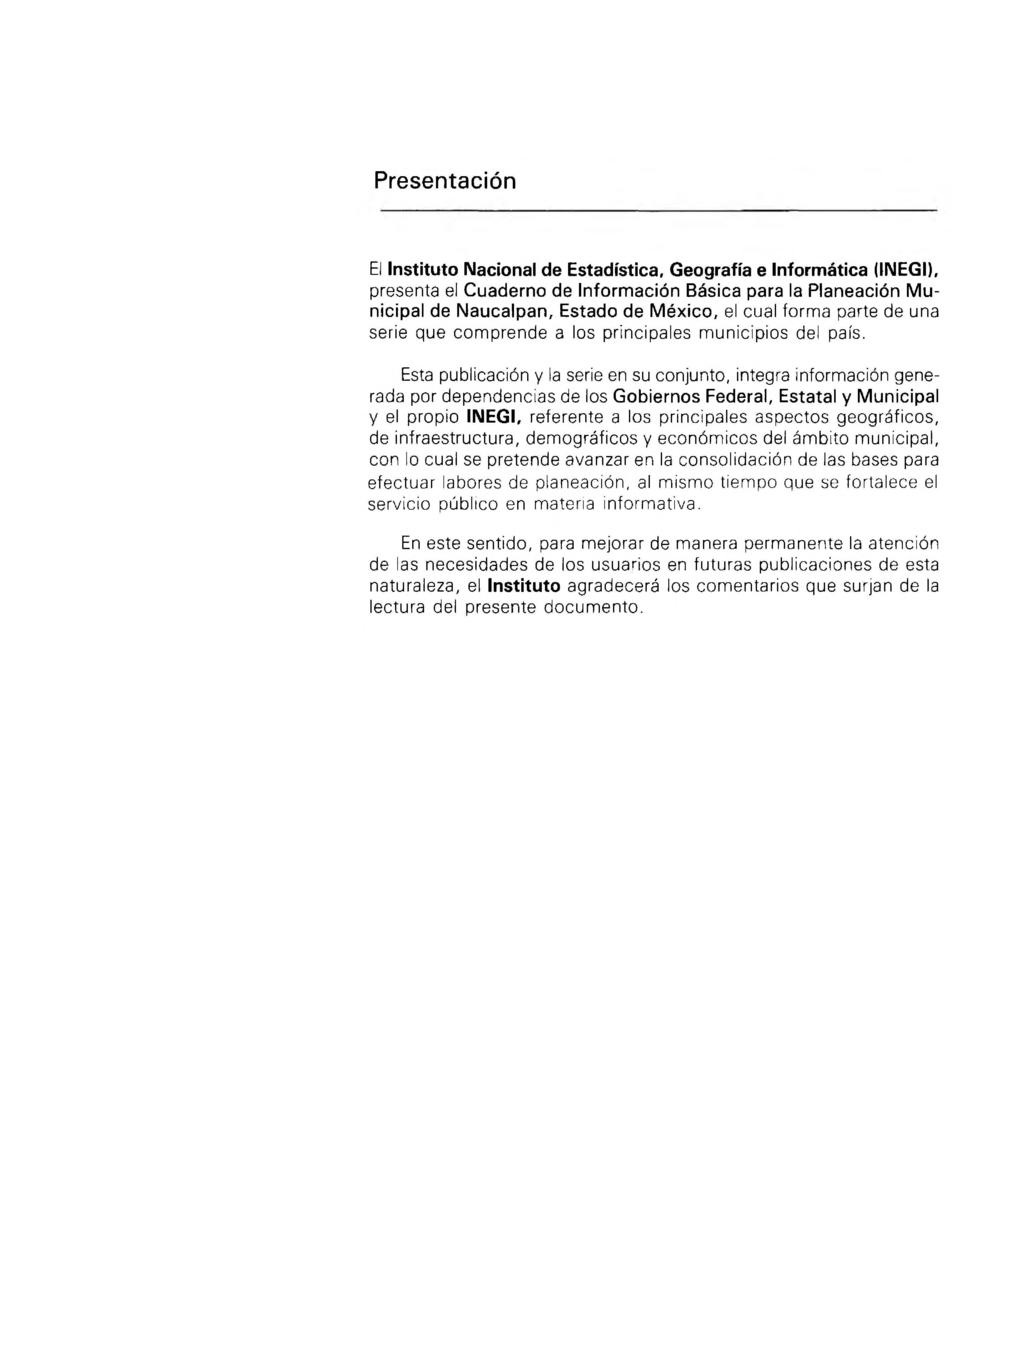 Presentación El Instituto Nacional de Estadística, Geografía e informática (INEGI), presenta el Cuaderno de Información Básica para la Planeación Municipal de Naucalpan, Estado de México, el cual